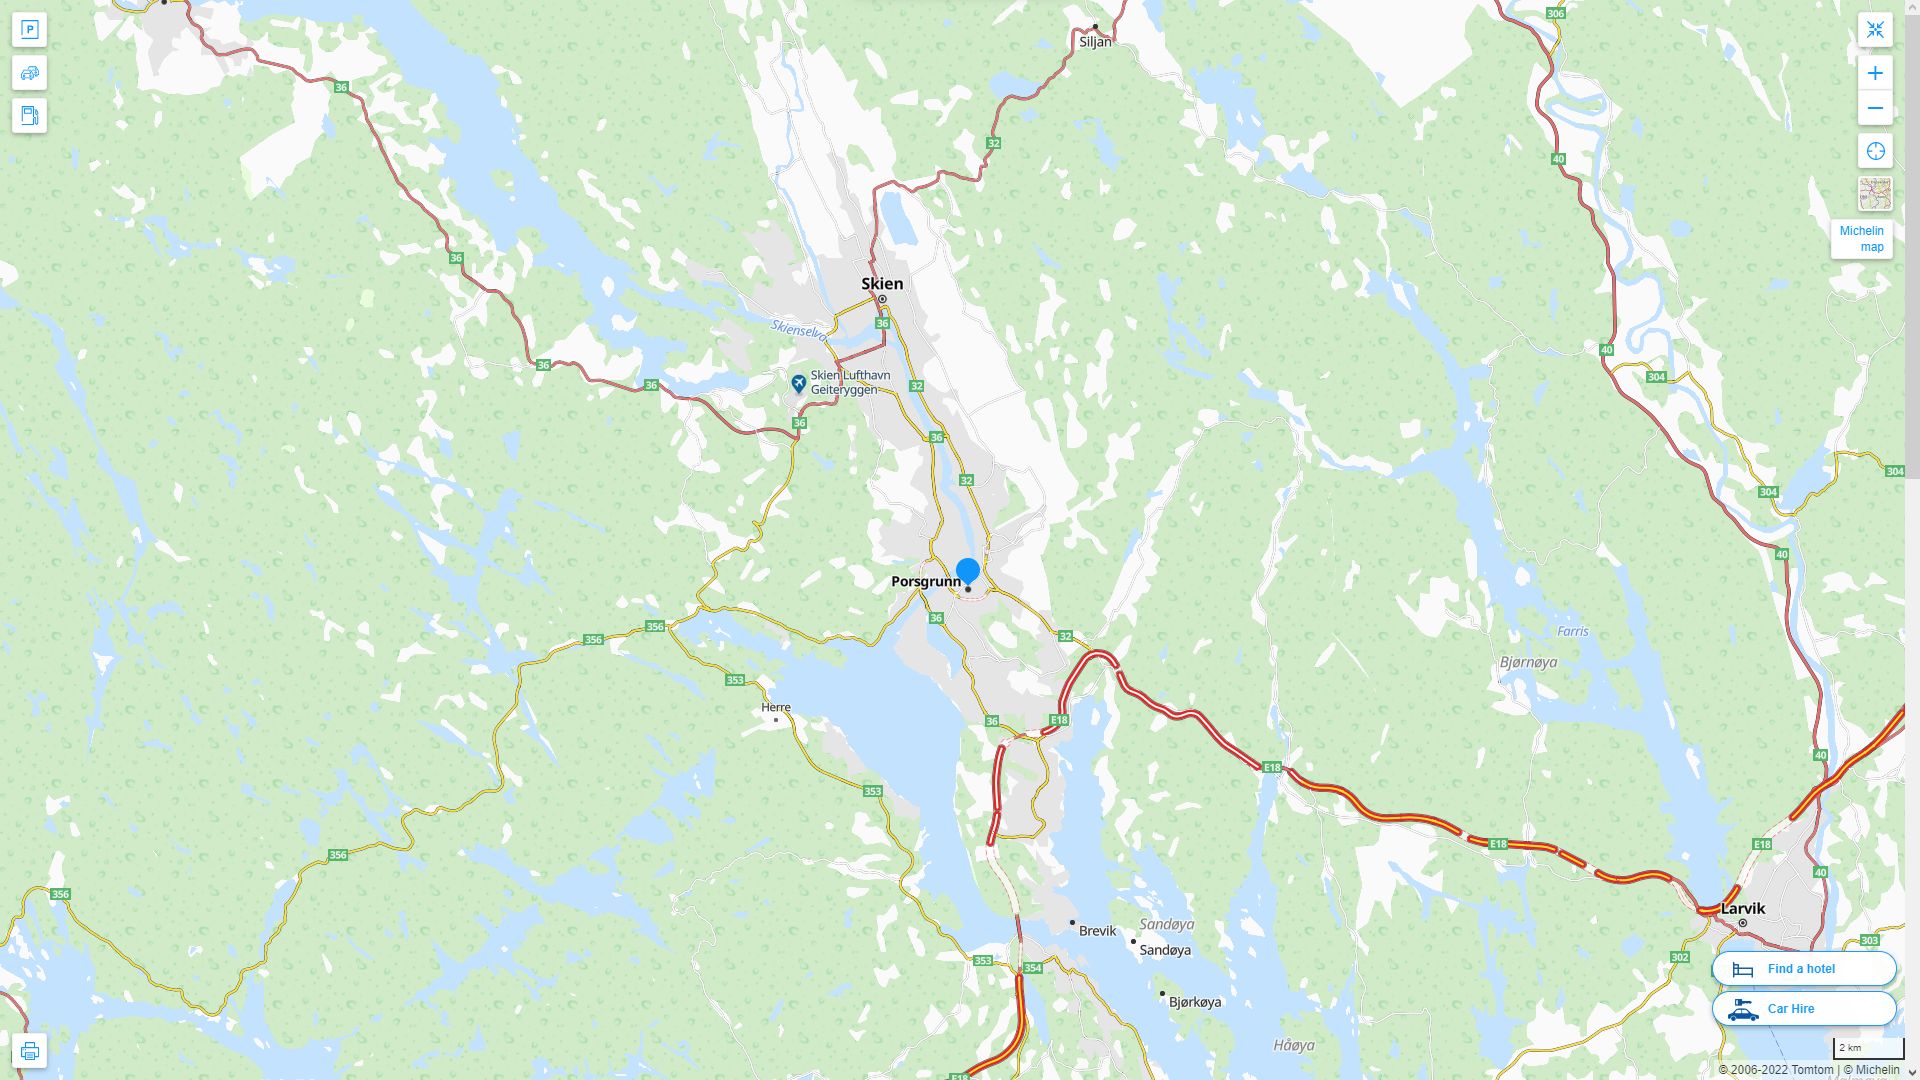 Porsgrunn Norvege Autoroute et carte routiere